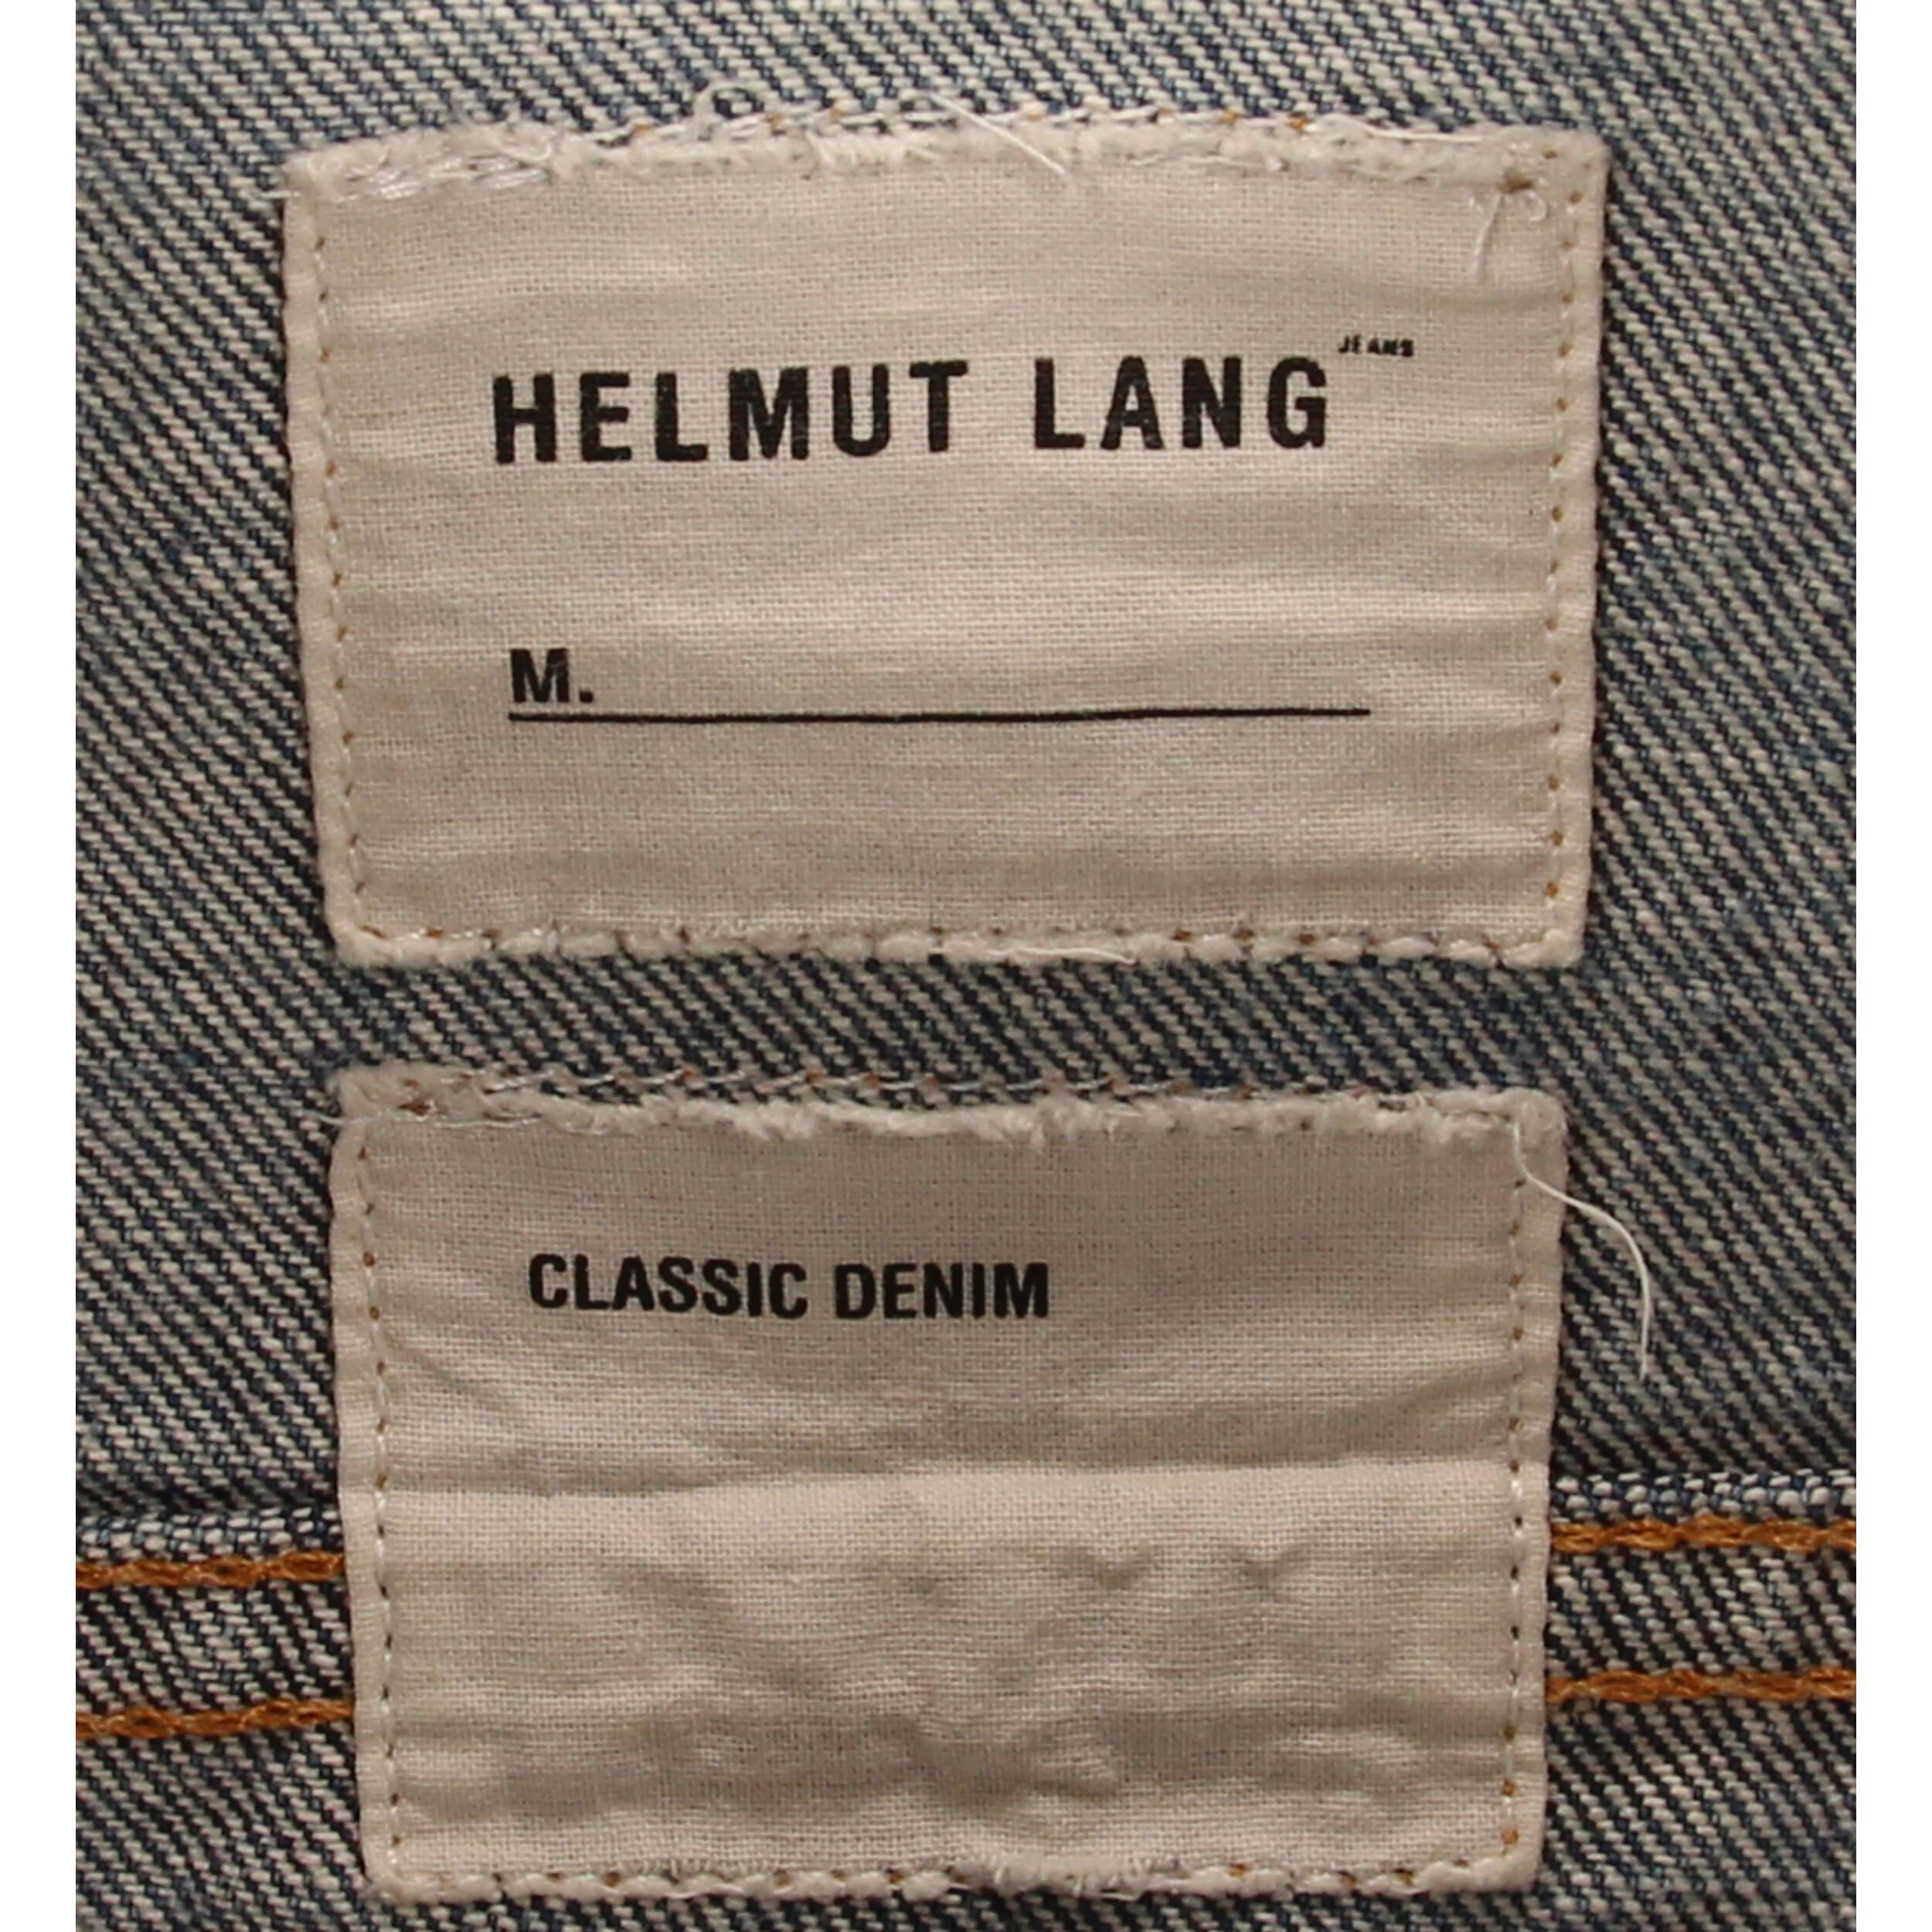 1990s Helmut Lang Denim Jacket 1